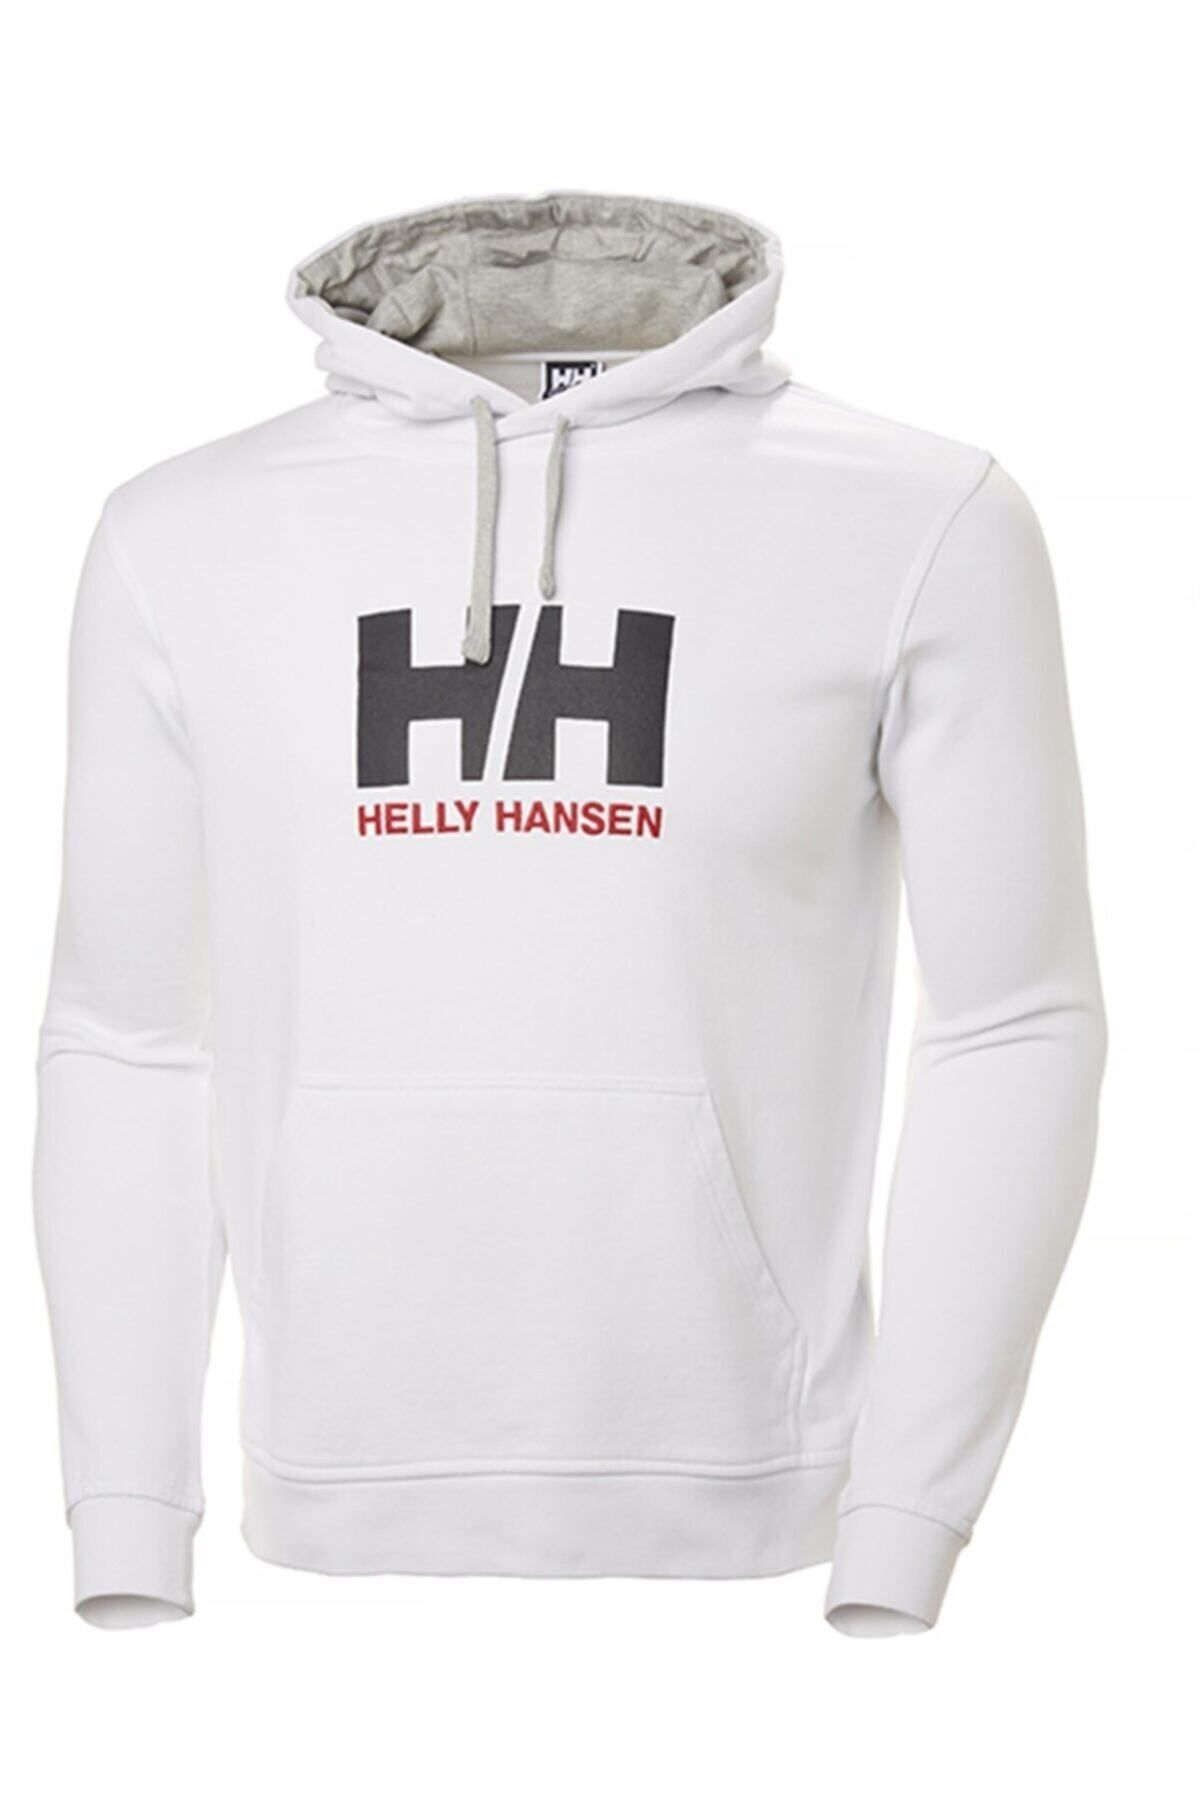 Helly Hansen Logo Hoodıe Kapişonlu Erkek Beyaz Sweatshirt Hha.33977-hha.001